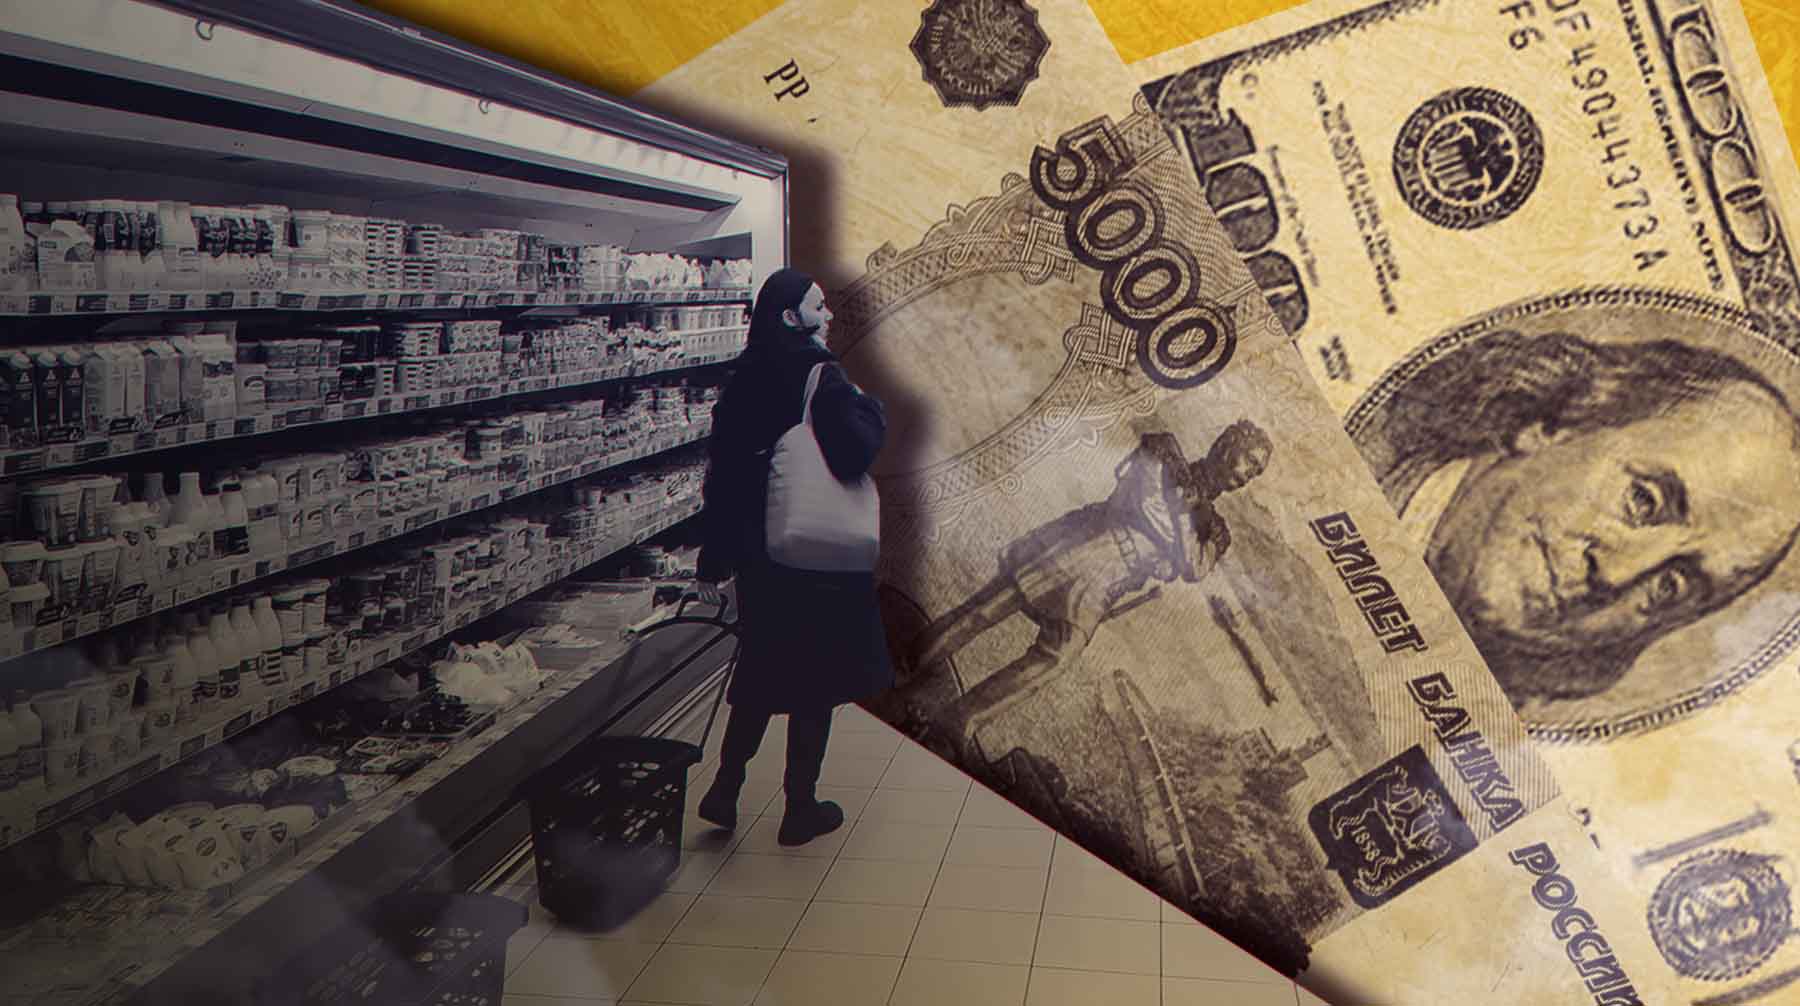 Почему растет курс доллара и как это повлияет на цены в магазинах? Экономисты ответили на главные вопросы об ослаблении рубля